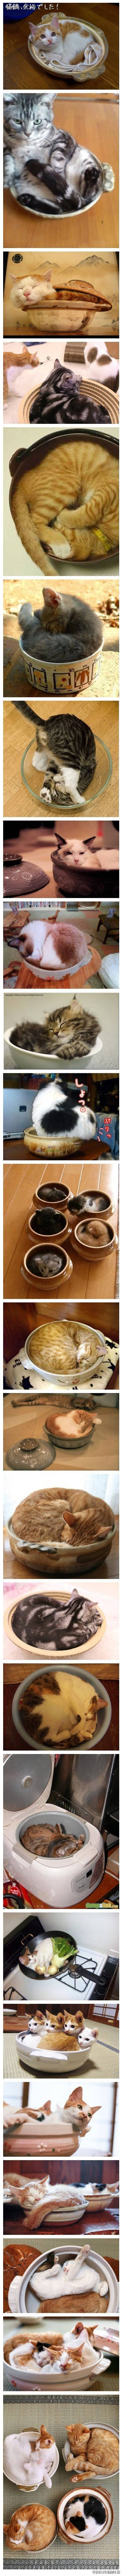 在碗里的猫猫可爱图片